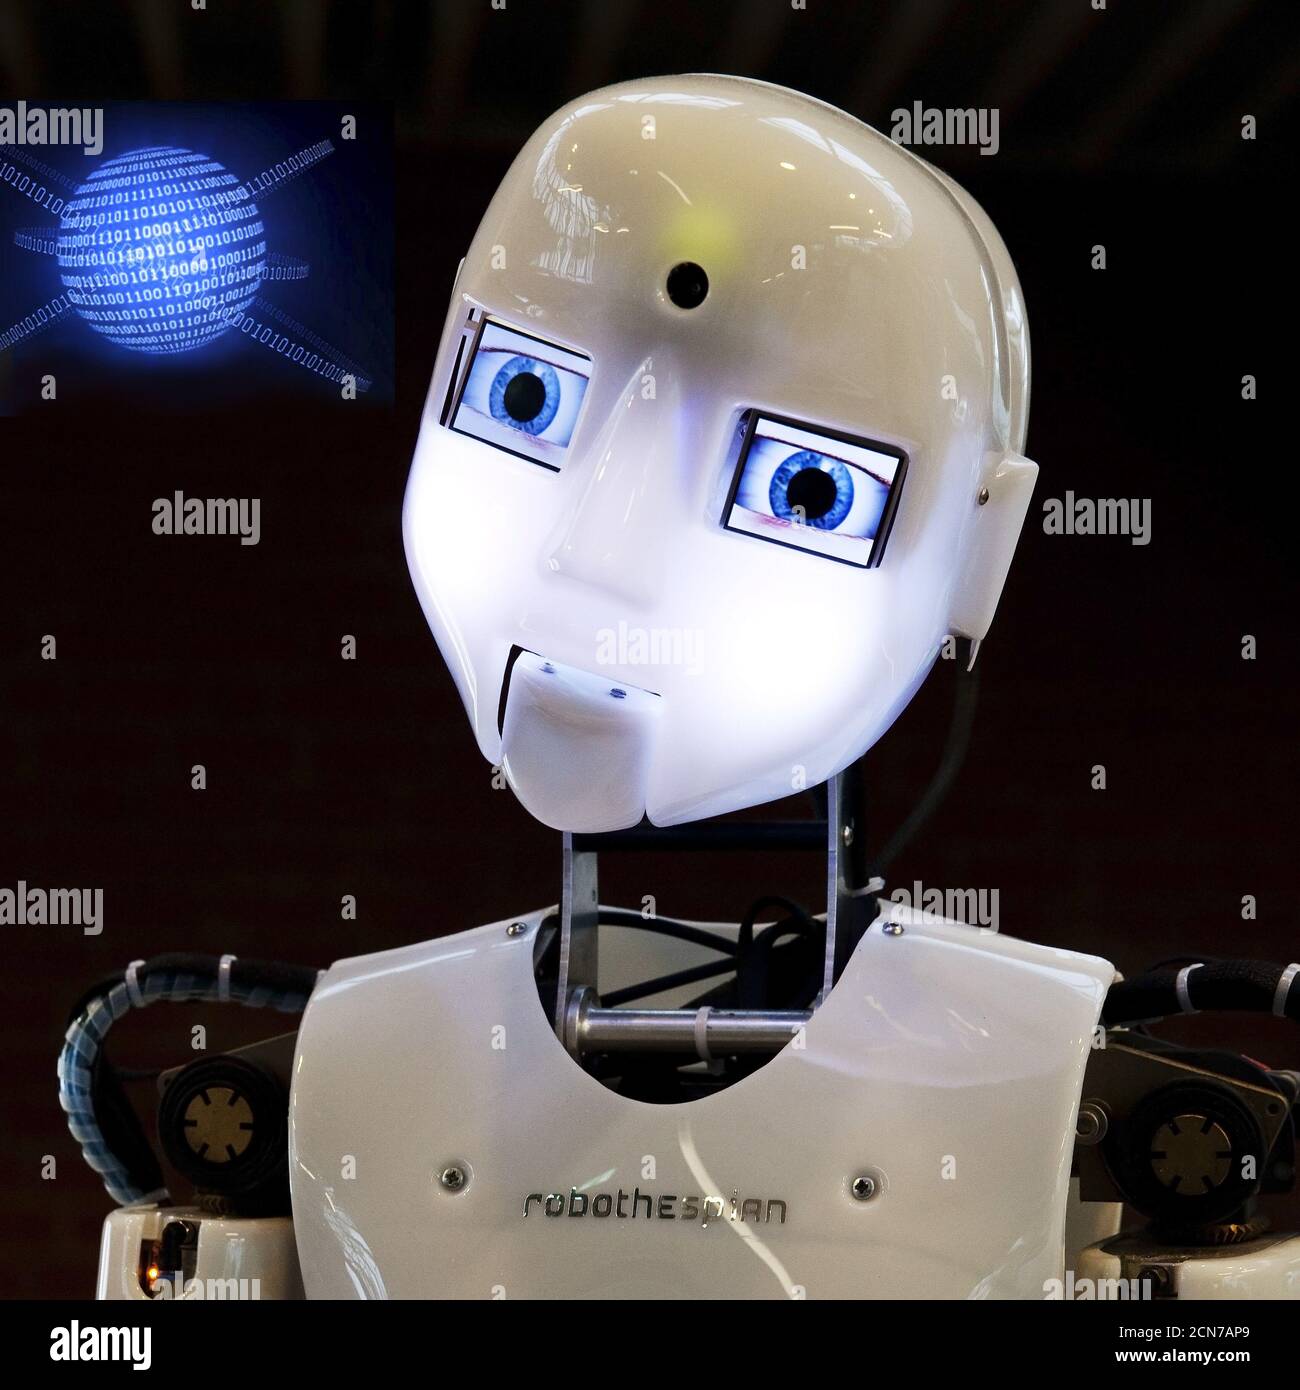 Fotomontaggio, il robot umanoide RoboThespian con una terra digitale dai numeri zero e uno Foto Stock